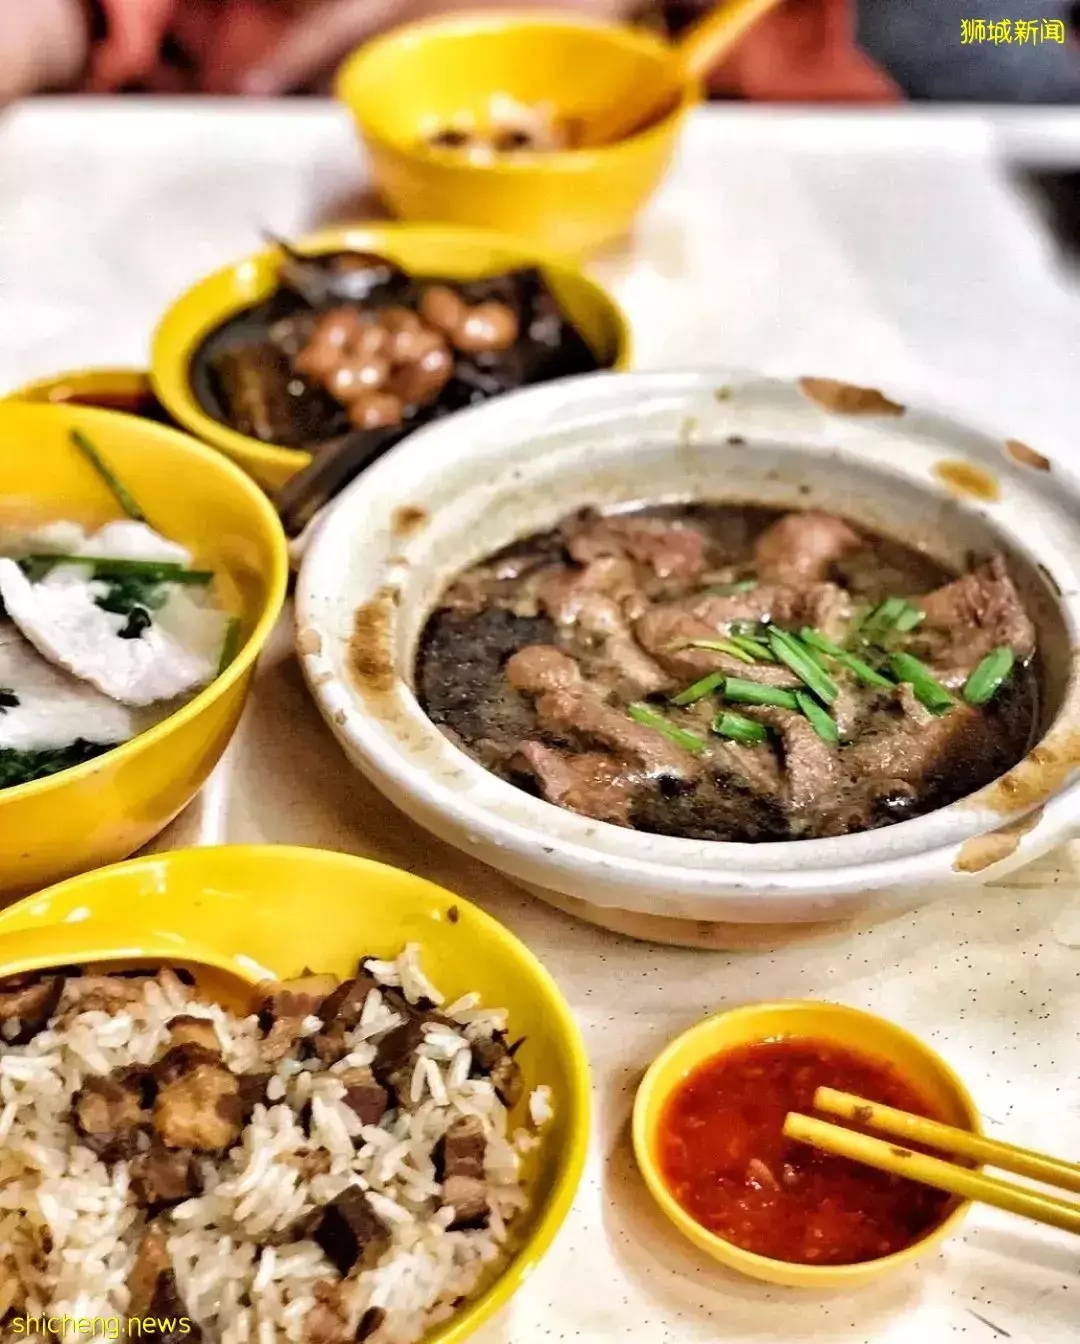 狮城MRT美食 文化与历史并存的Jalan Besar，古早味与个性化美食齐上阵